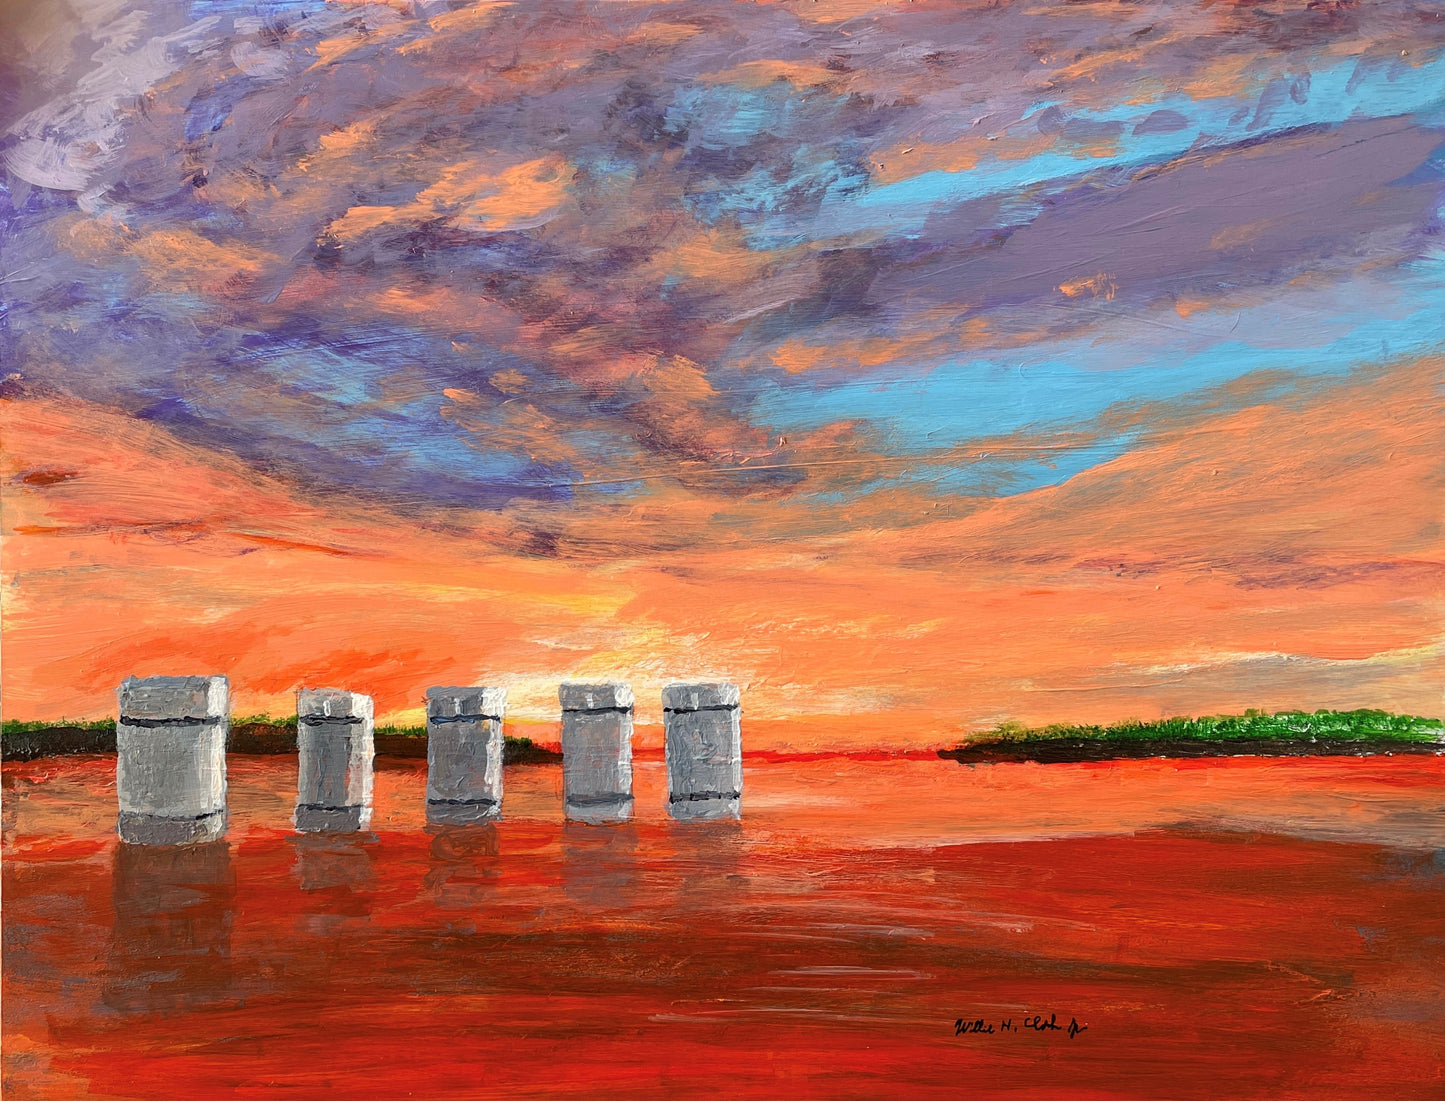 Five Towers at Lake Murray Dam in South Carolina Paper Print